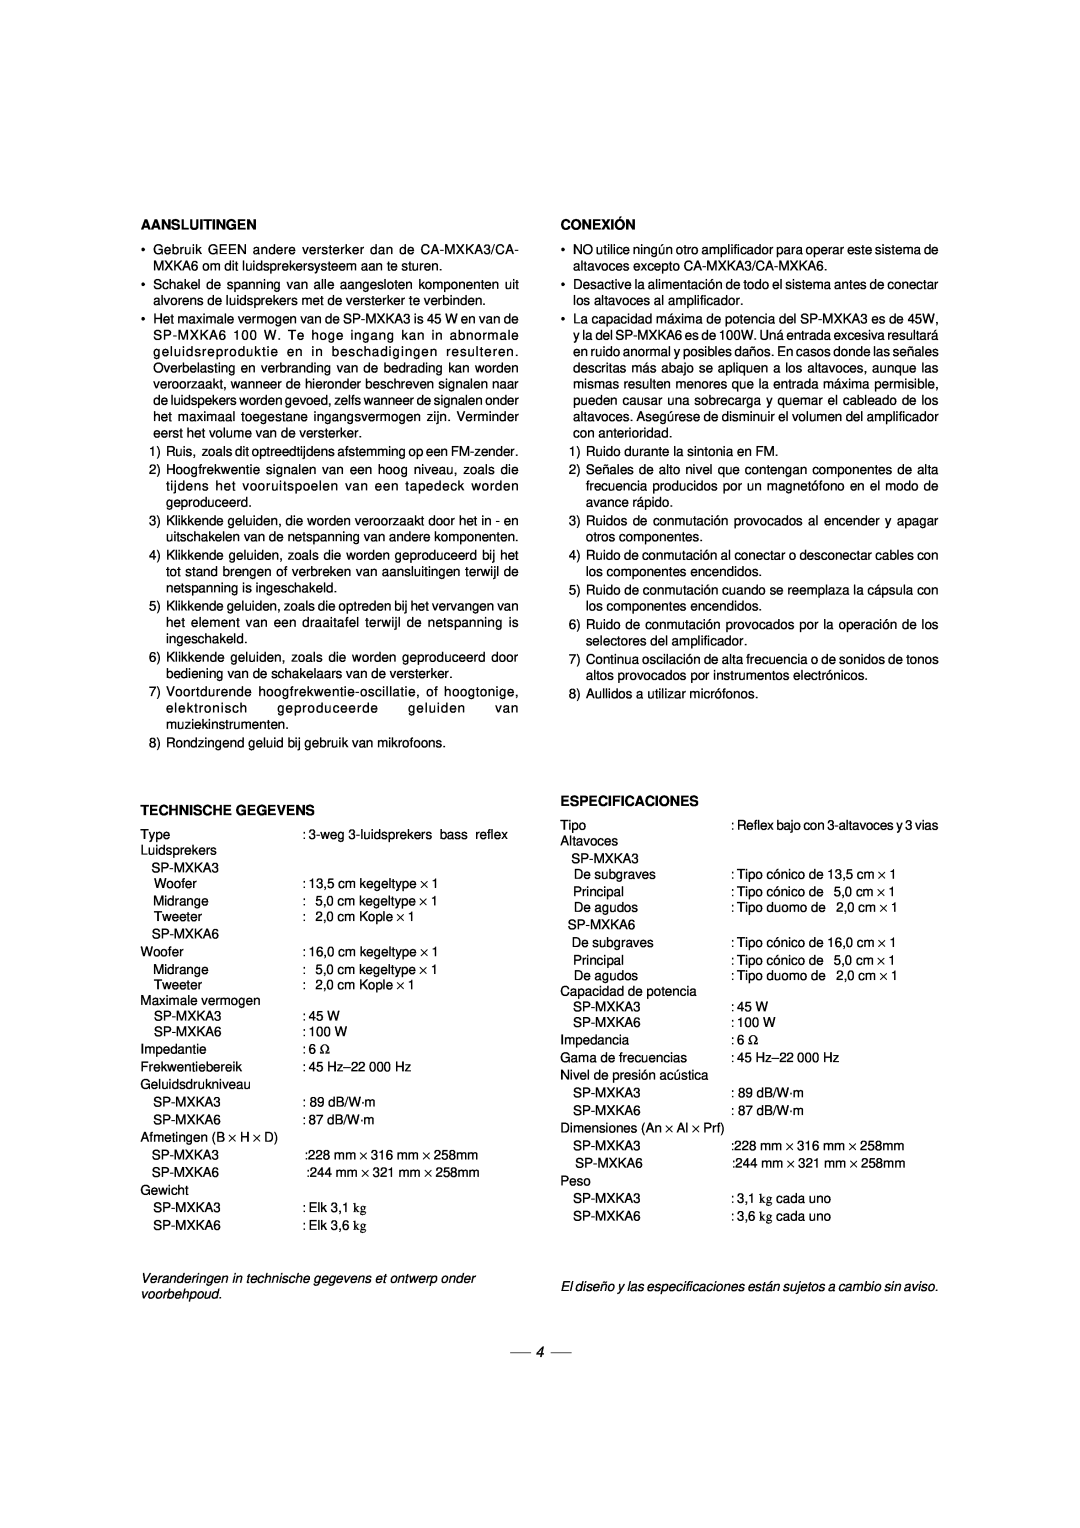 JVC CA-MXKA6, LVT1014-003A, 0303NYMCREBETEN manual Aansluitingen, Conexión, Technische Gegevens, Especificaciones 